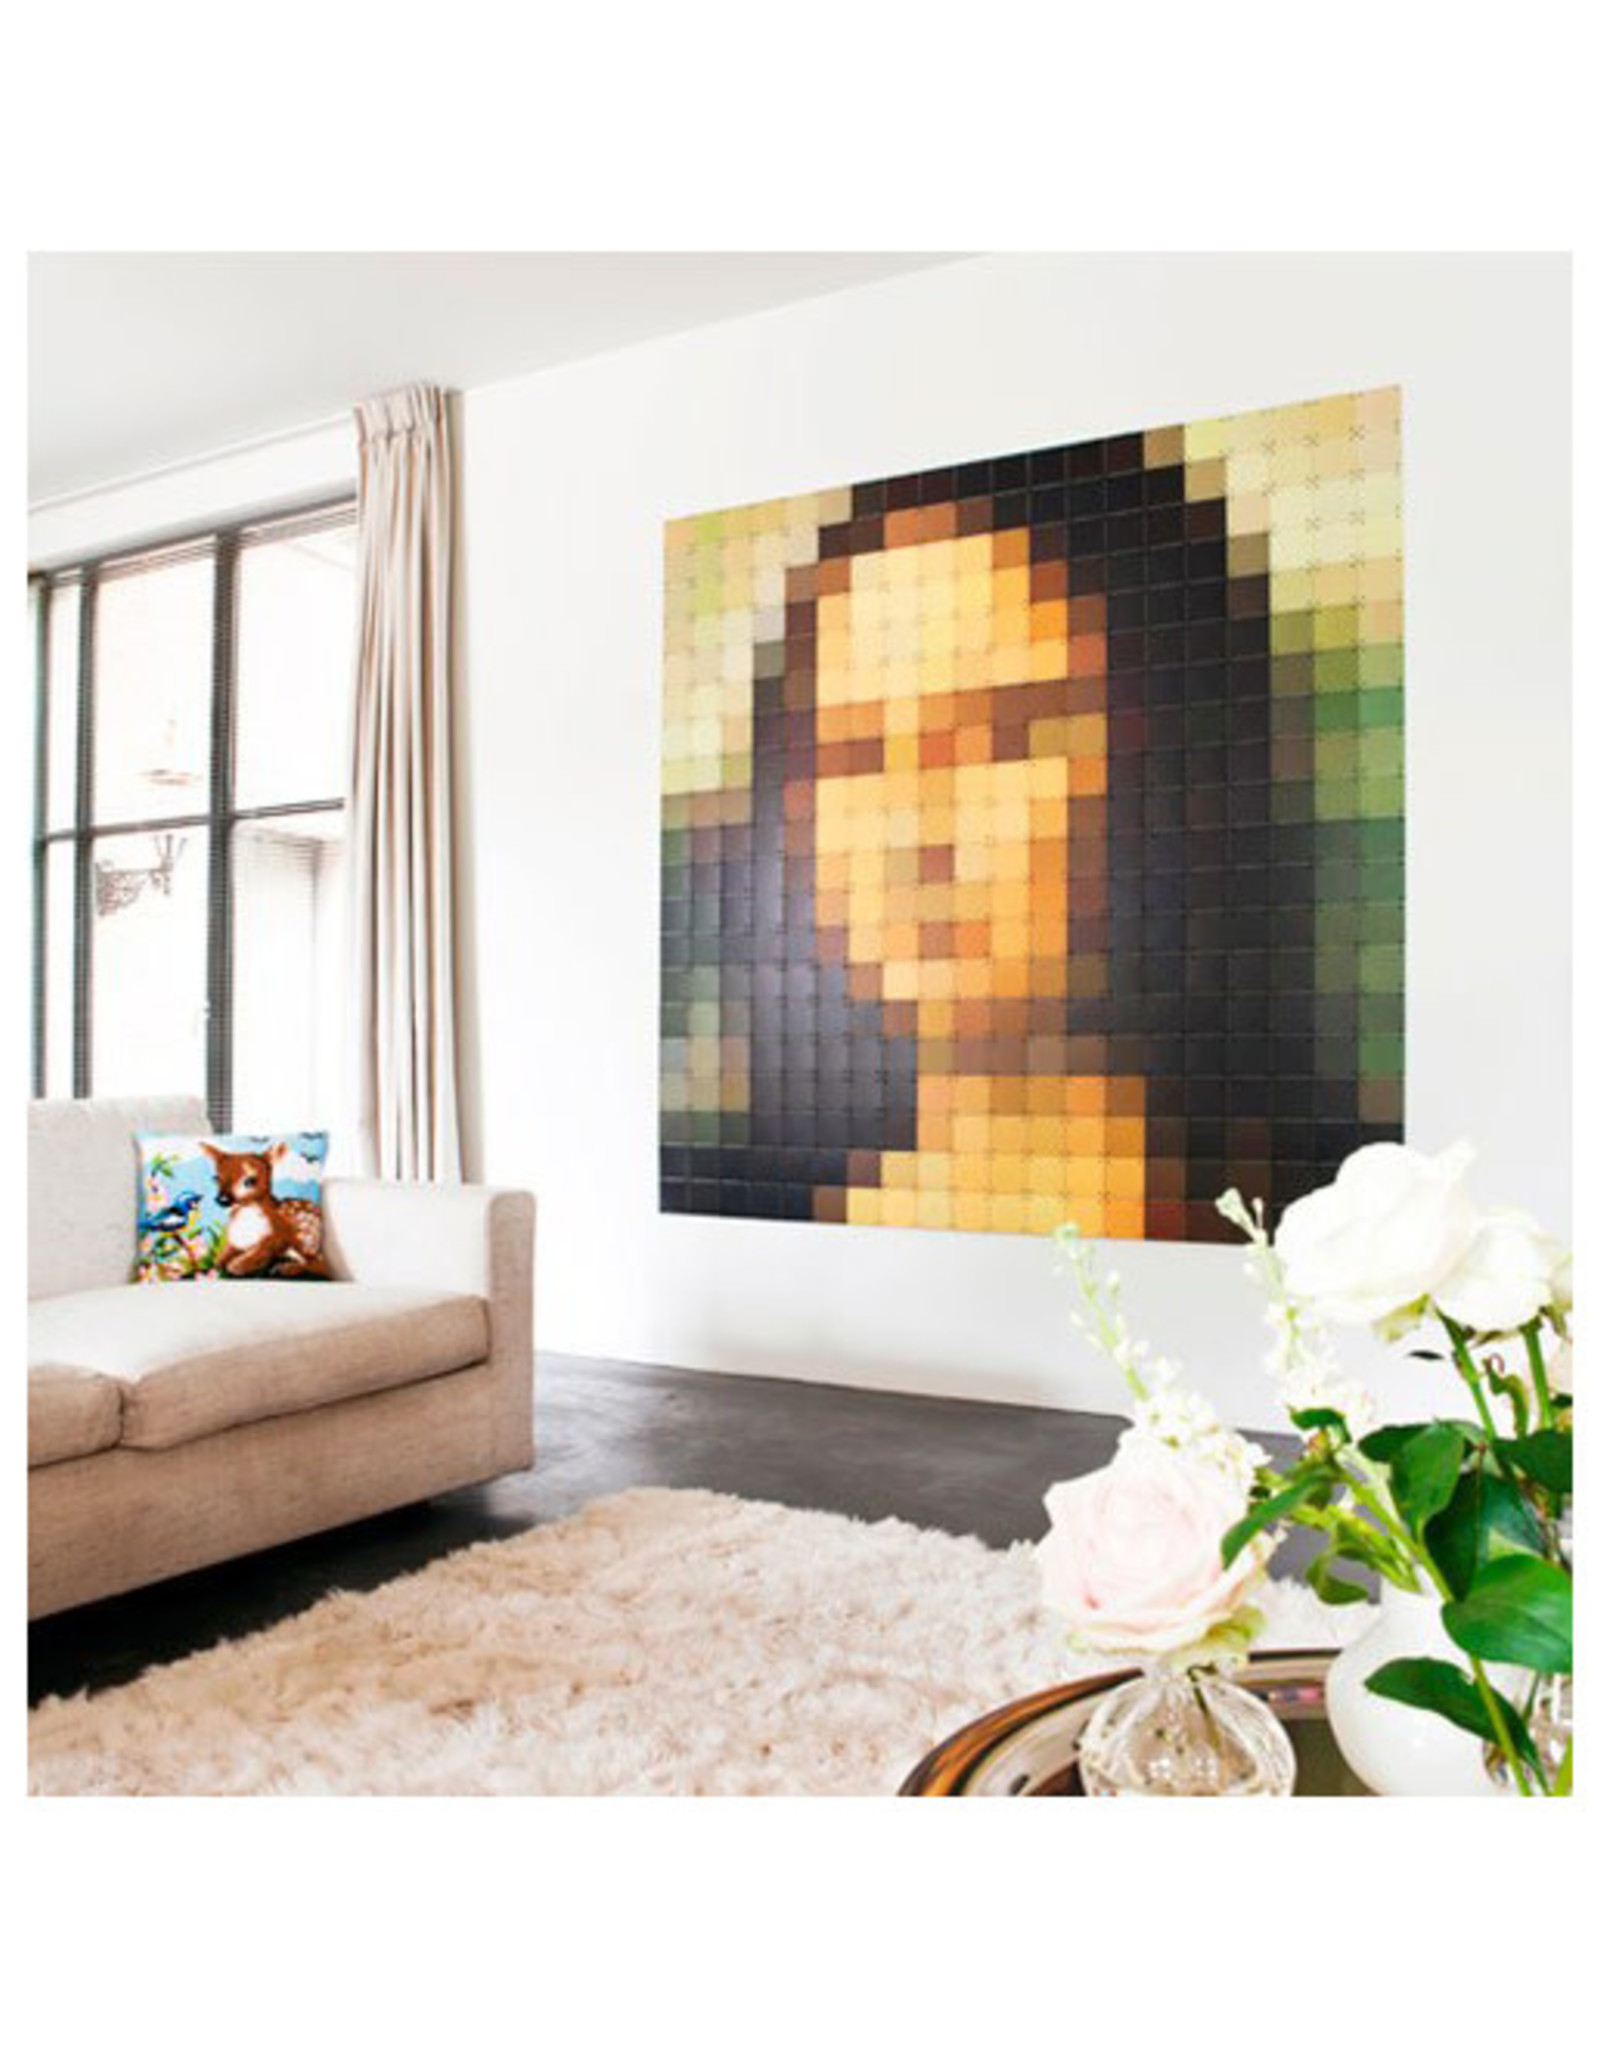 IXXI Pixelated Mona Lisa - 200cm x 200cm